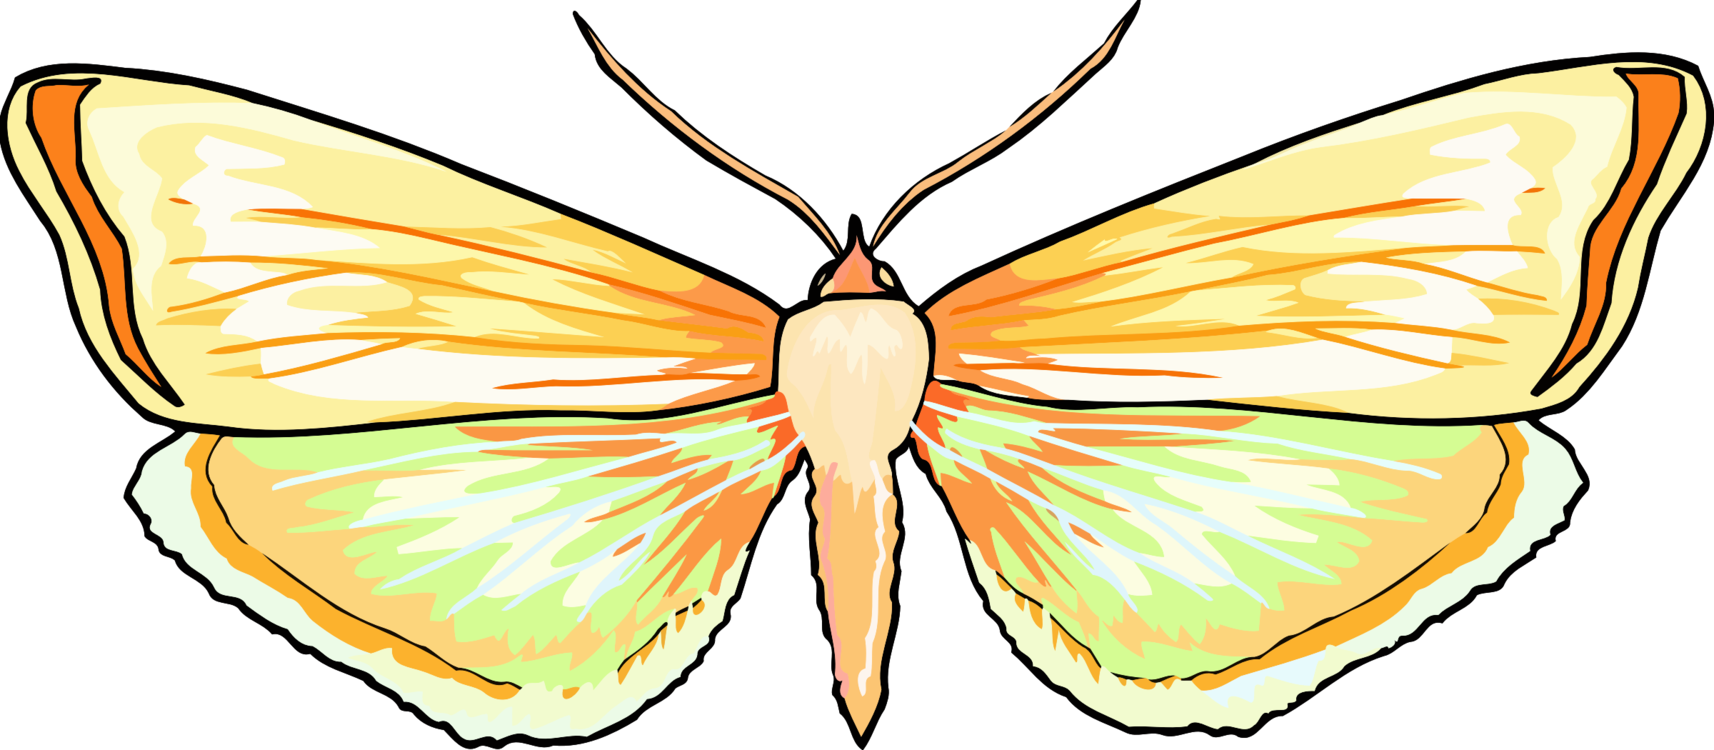 Butterfly,Line,Symmetry